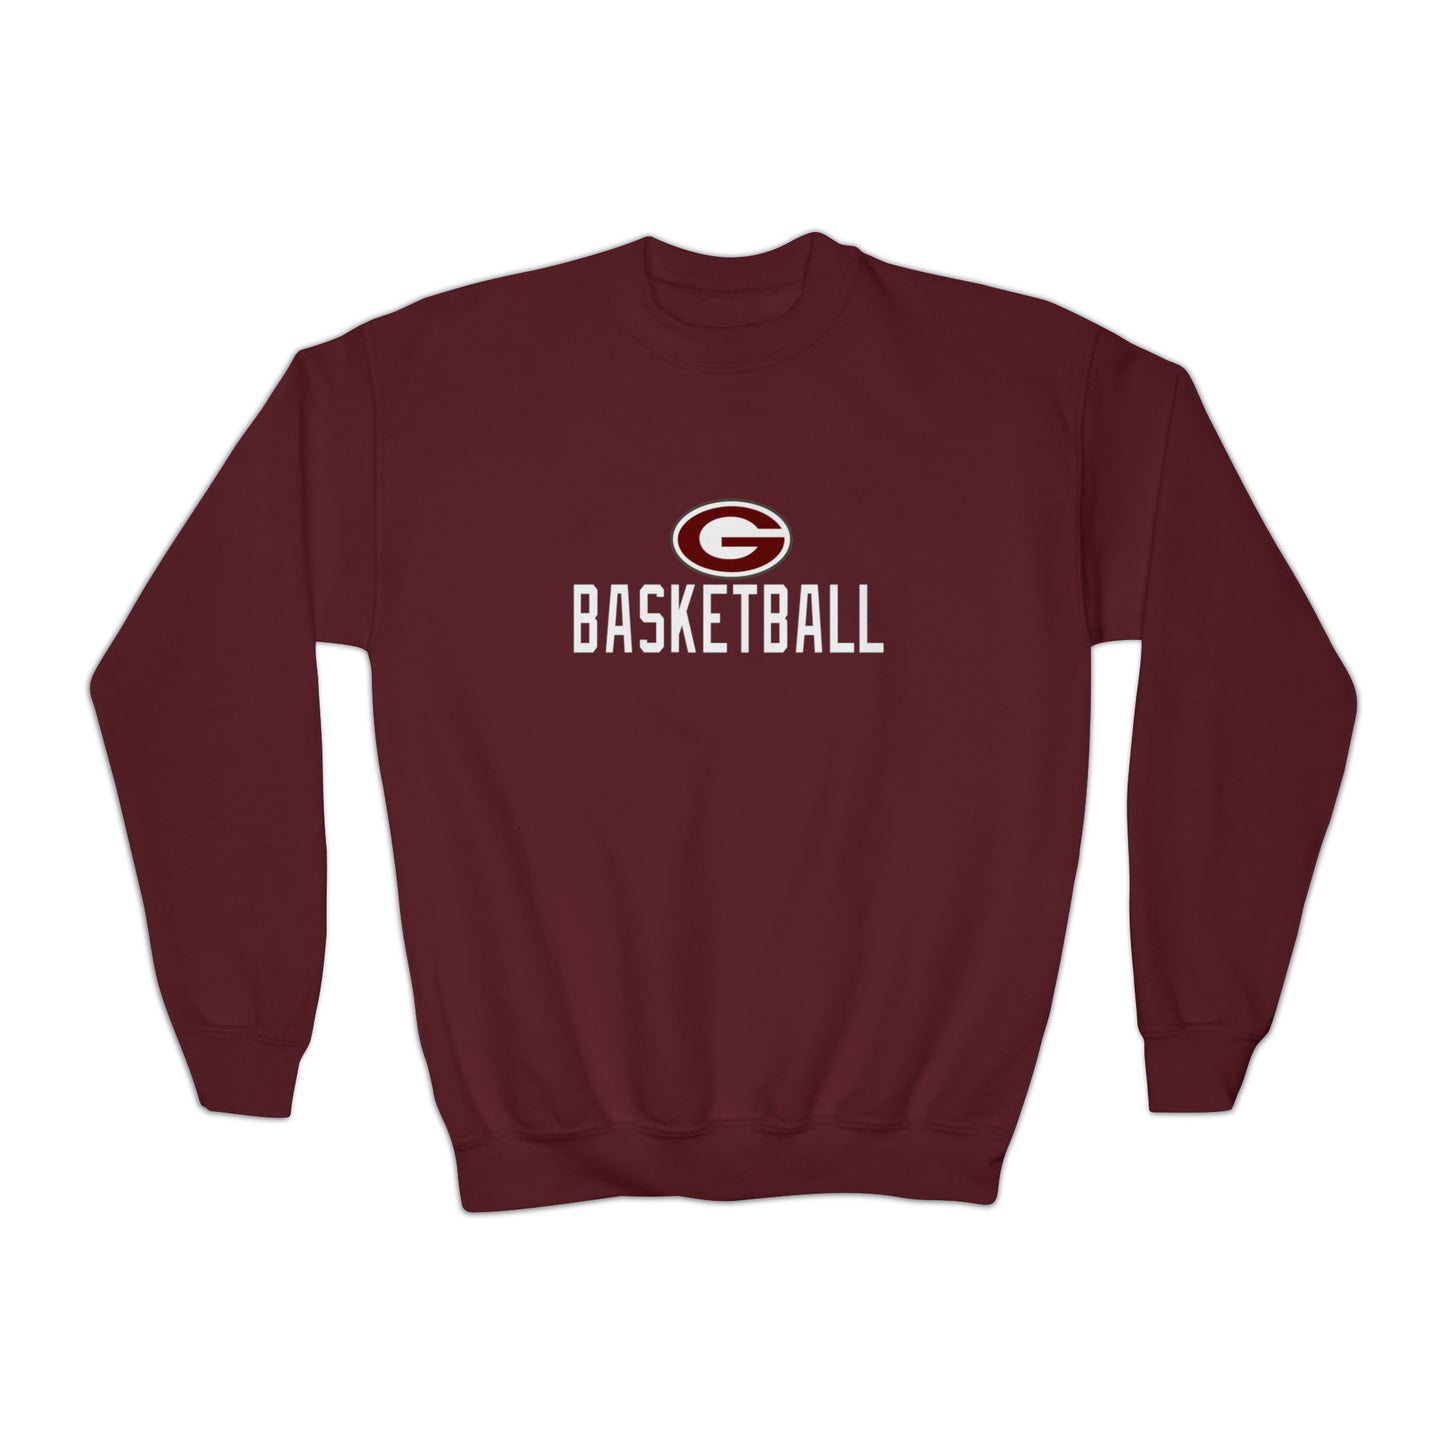 Gardendale Basketball Youth Crewneck Sweatshirt